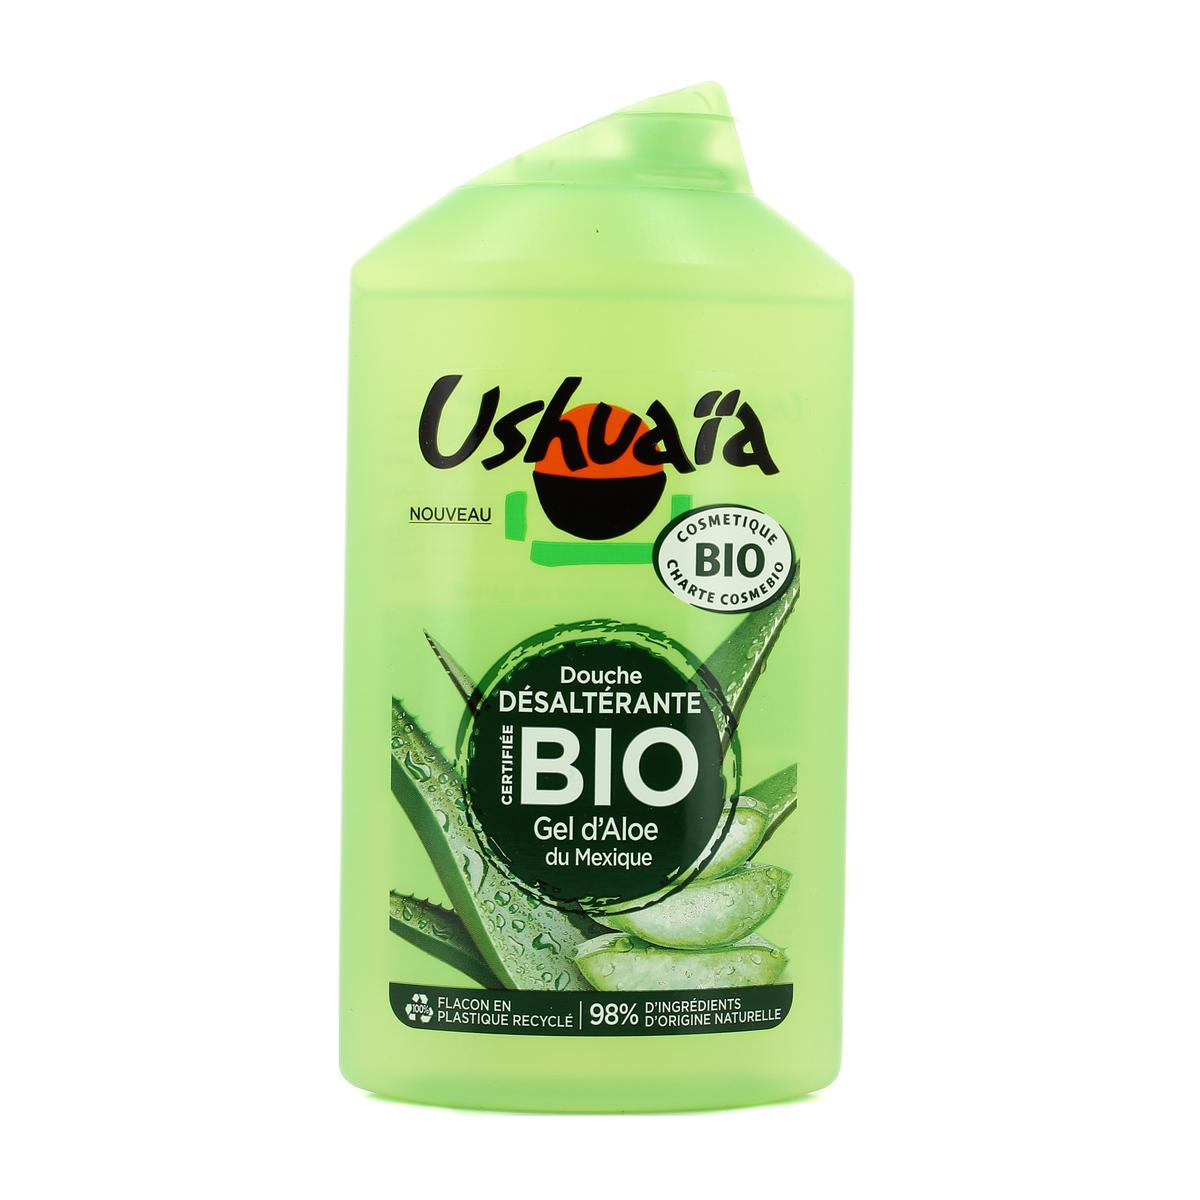 Acheter Ushuaïa Douche désaltérante Bio - Gel D'Aloe du Mexique, 250ml